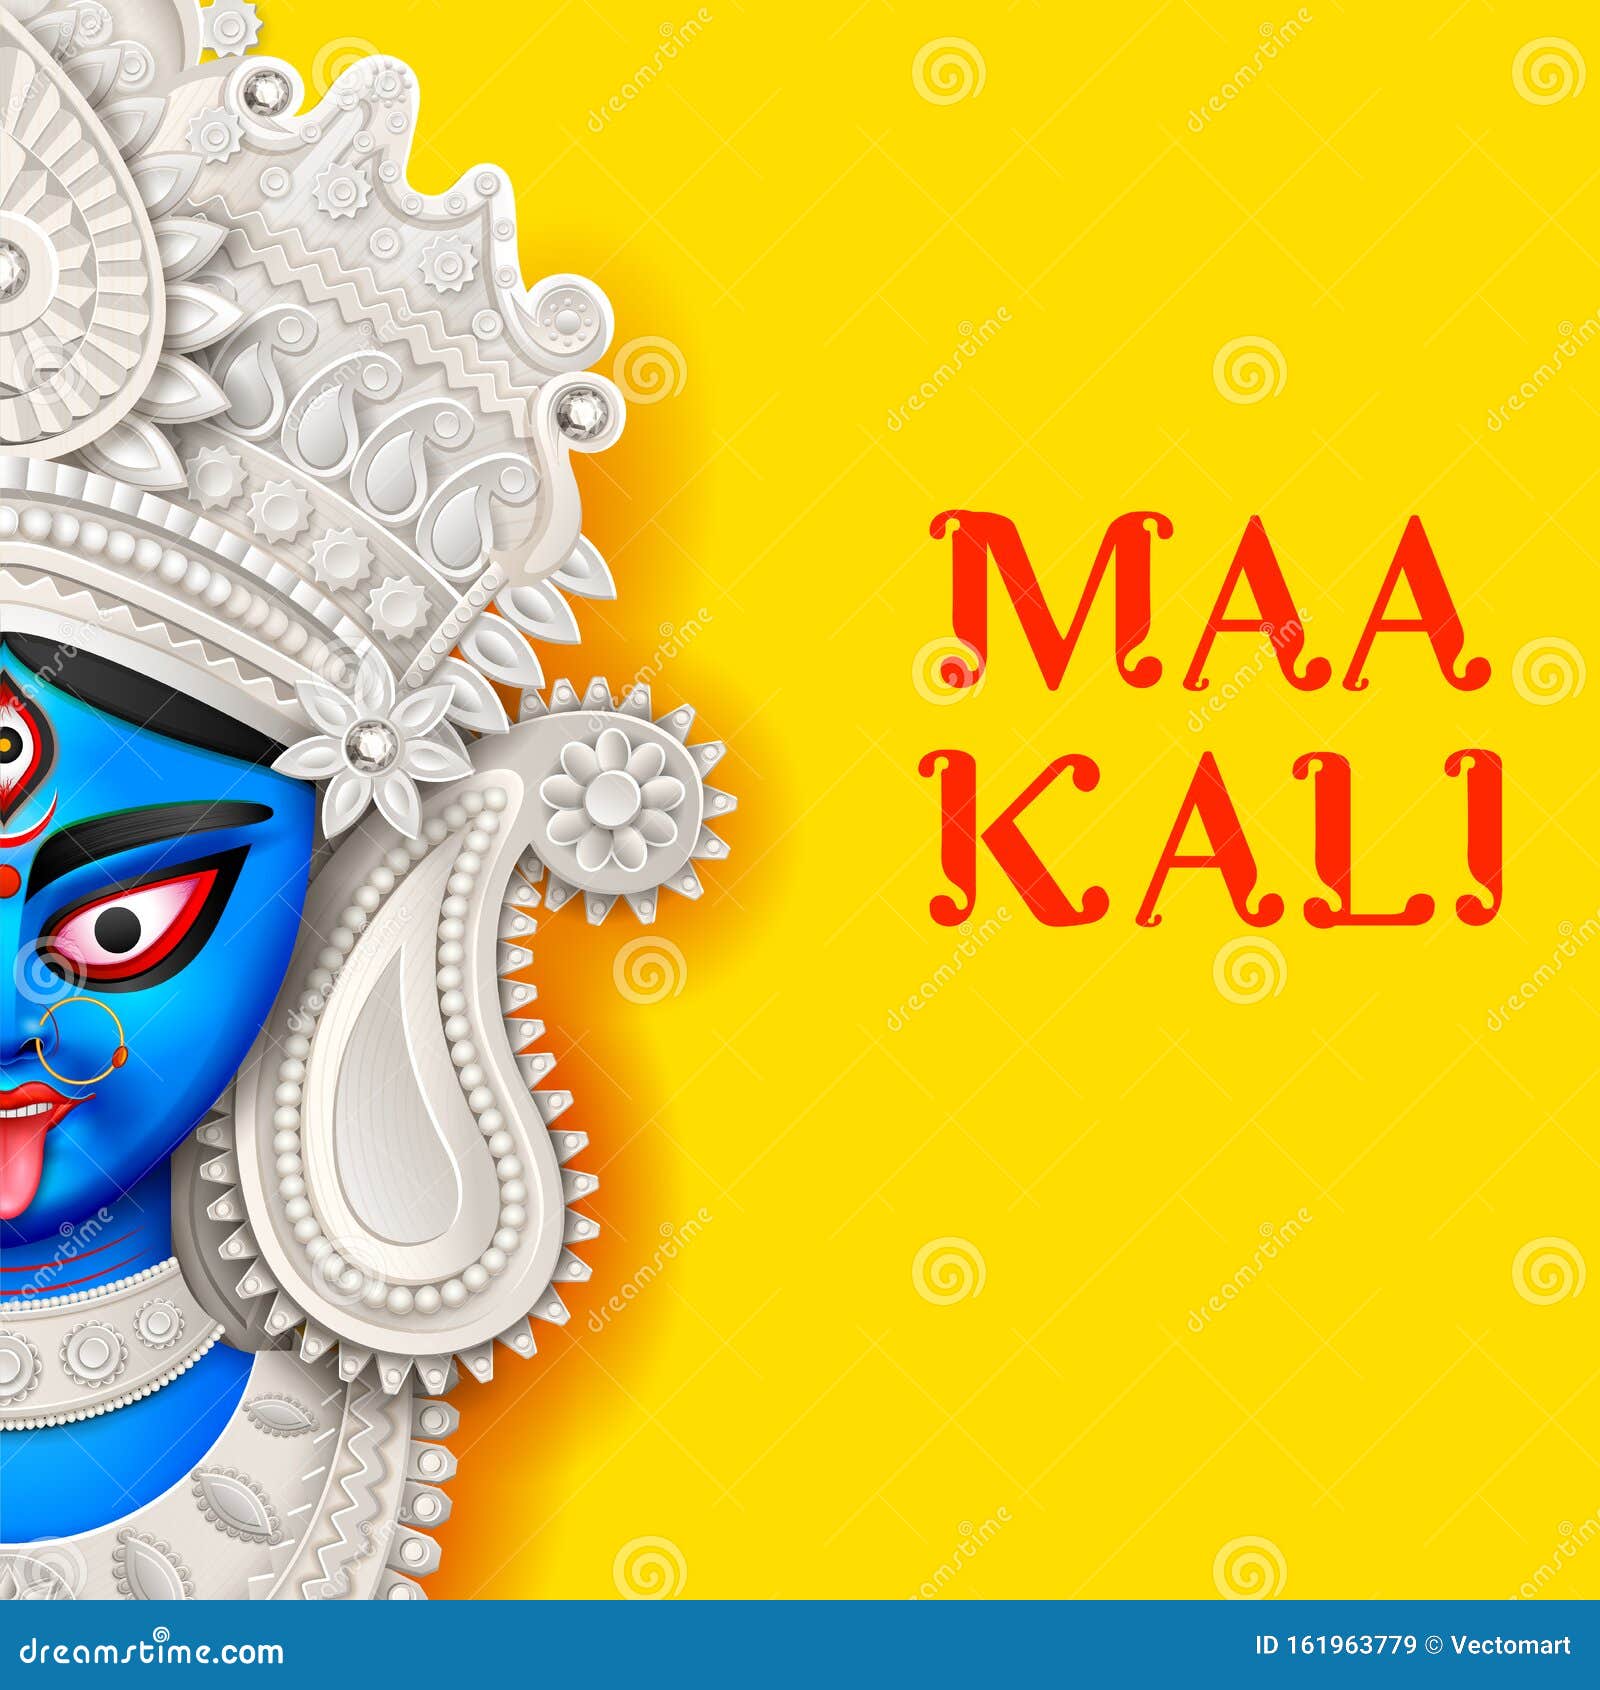 Tôn vinh vẻ đẹp và lòng kính trọng Đức Mẹ Kali trong ngày Diwali Hindu, và không ai có thể bỏ qua những thiết kế nền tuyệt đẹp này. Với sự kết hợp đặc biệt giữa hình ảnh Đức Mẹ Kali và các màu sắc tươi sáng, bạn sẽ cảm thấy bình an và tâm hồn thoải mái trong bầu không khí đặc biệt này. 